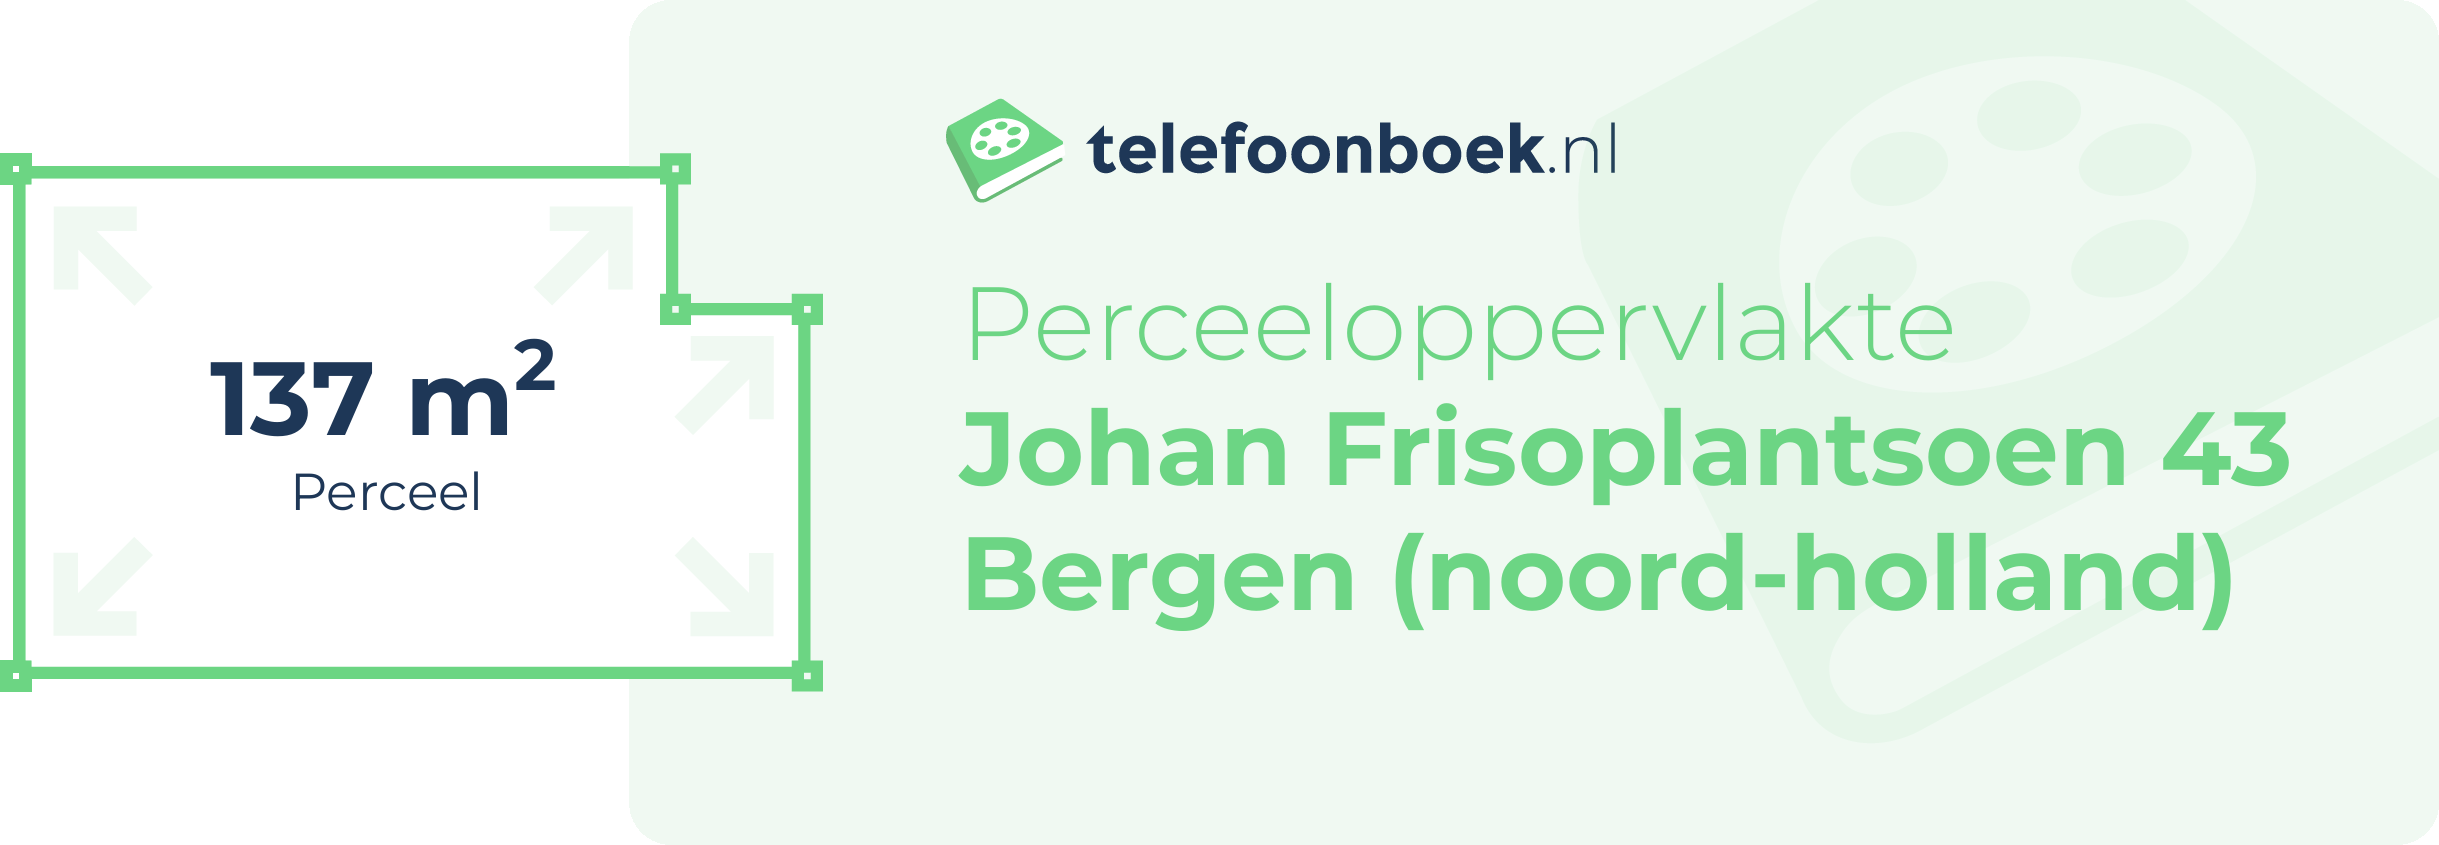 Perceeloppervlakte Johan Frisoplantsoen 43 Bergen (Noord-Holland)